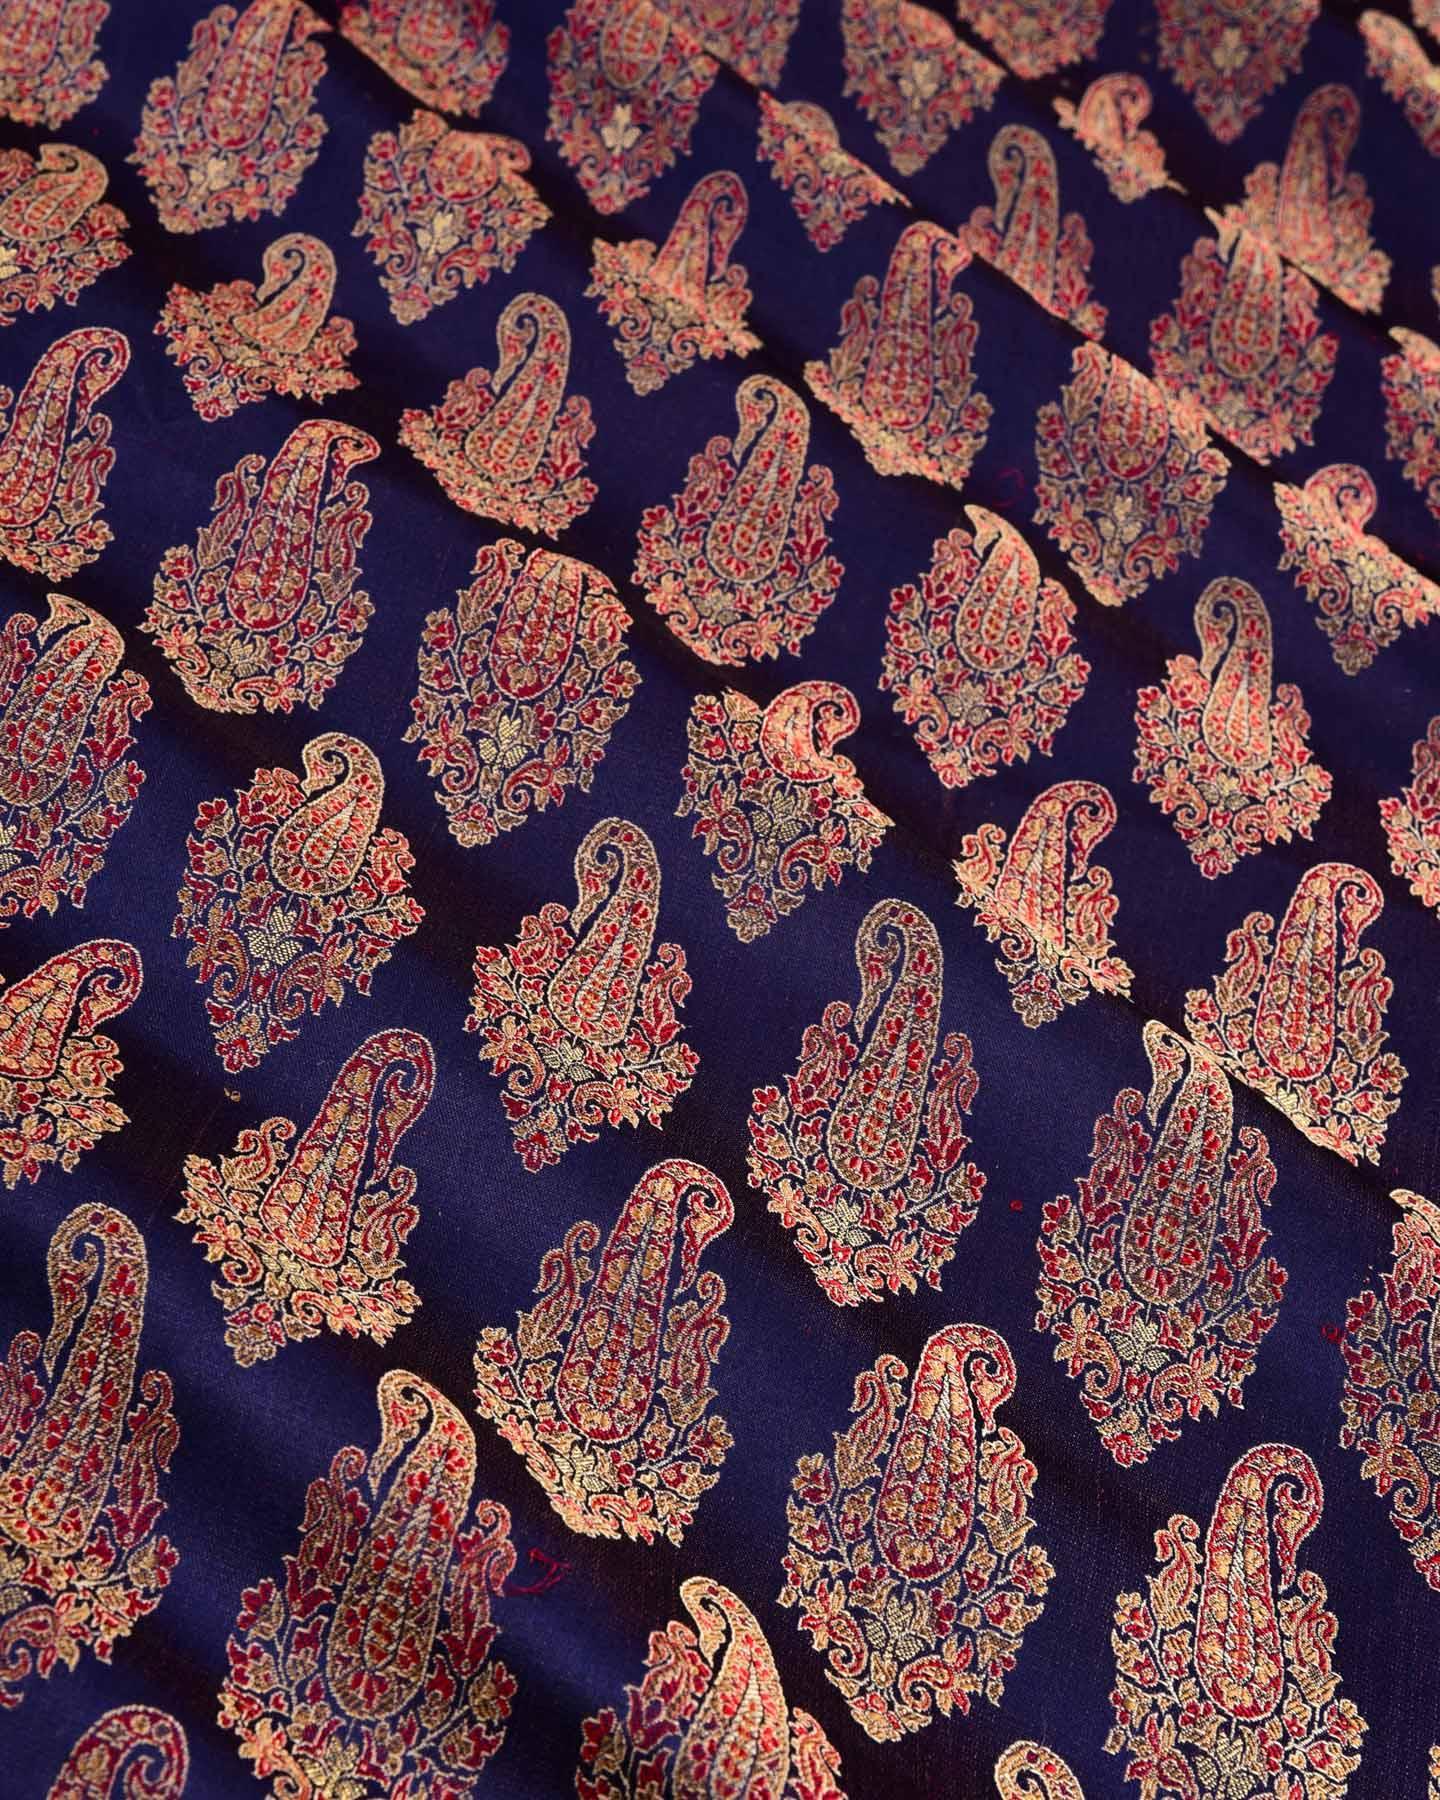 Navy Blue Banarasi Tehra Jamawar Brocade Handwoven Katan Silk Fabric with Zari Accents - By HolyWeaves, Benares